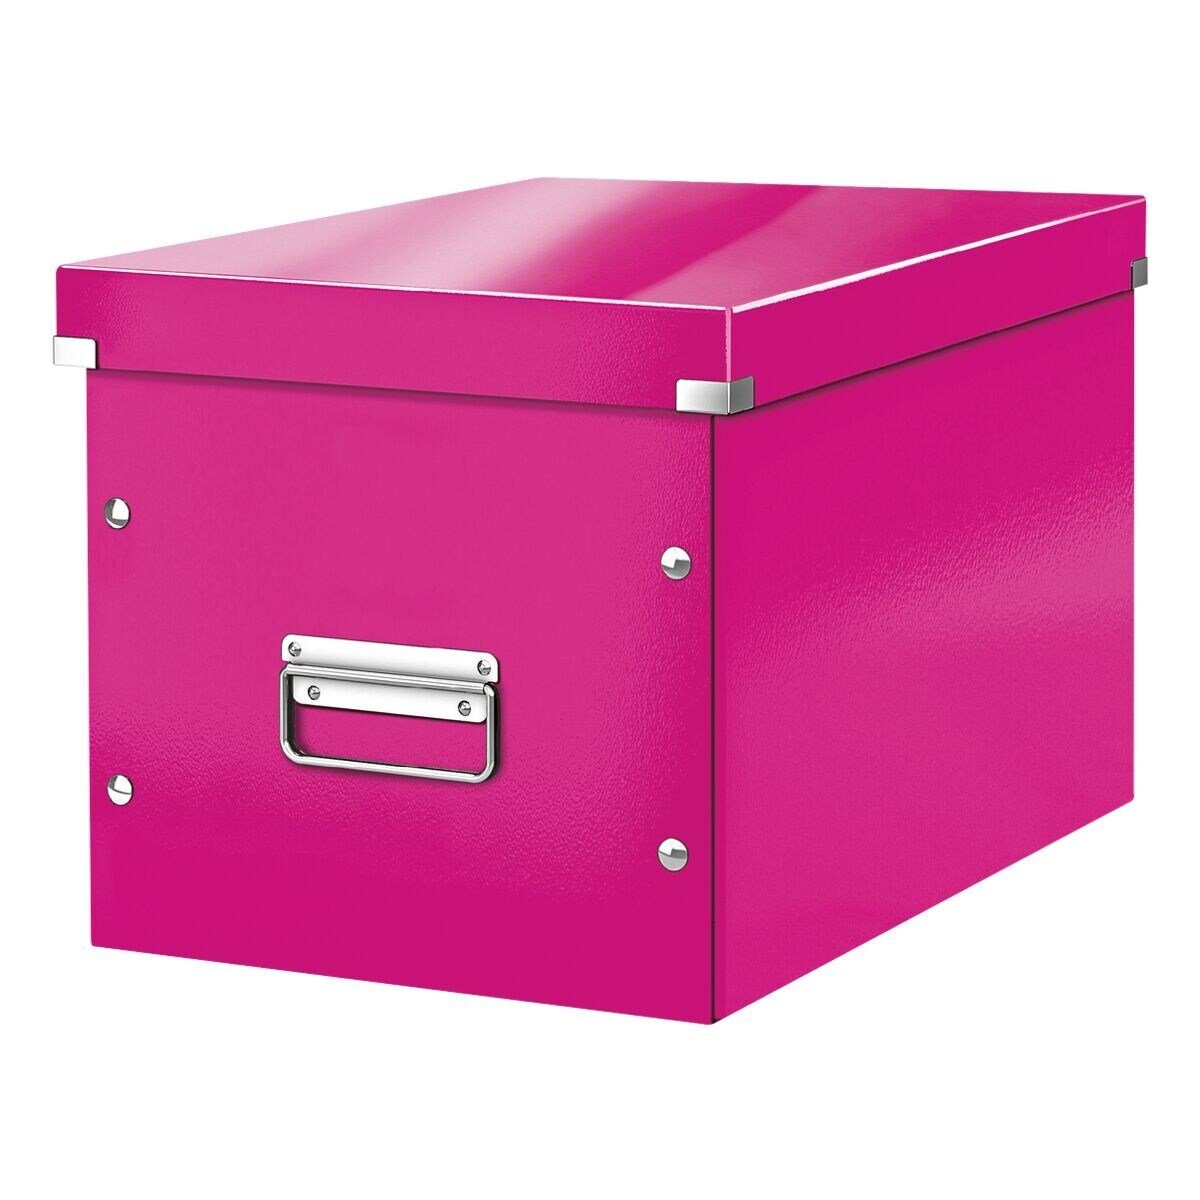 LEITZ Aufbewahrungsbox Click & Store Cube, passend für Standardmöbel mit kubischen Fächern pink metallic